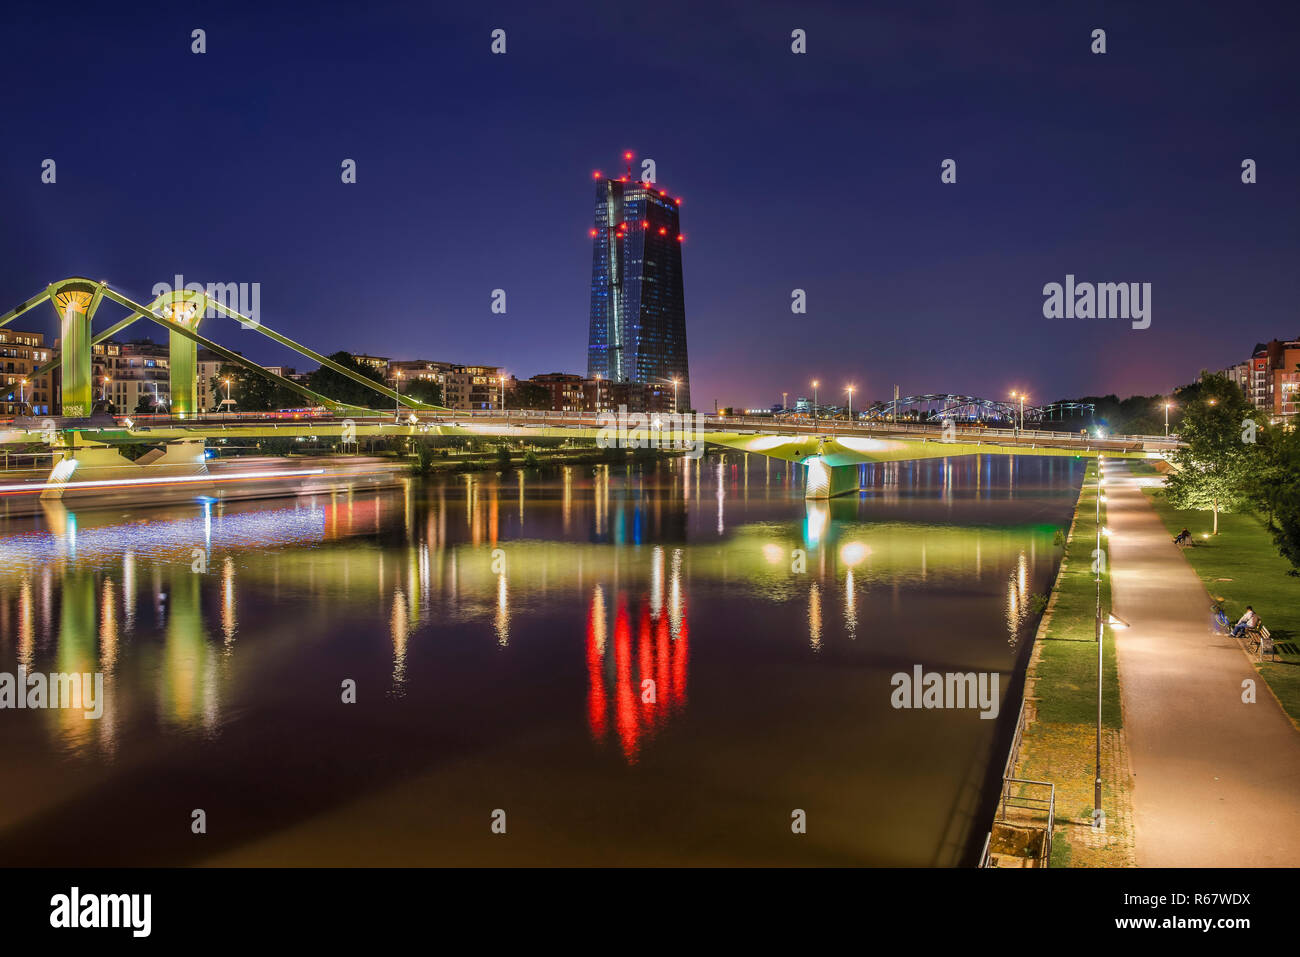 Banque centrale européenne, BCE, en face de la skyline illuminée, Osthafenbrücke, crépuscule, Frankfurt am Main, Hesse, Allemagne Banque D'Images